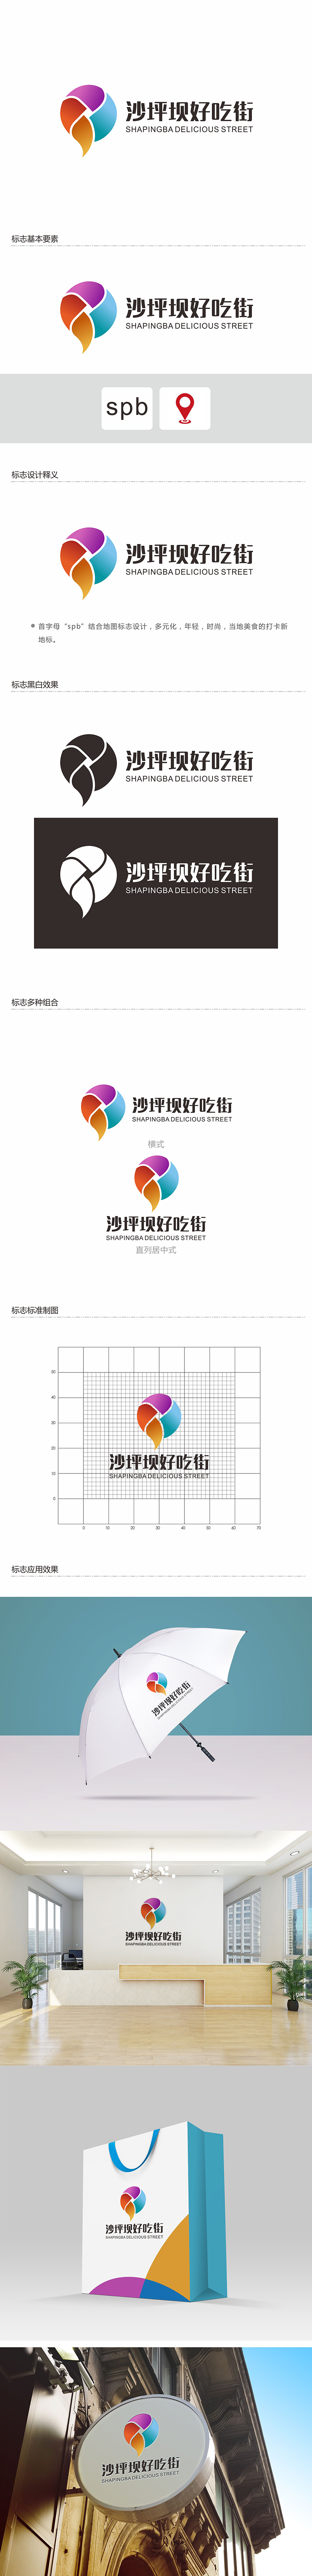 郑锦尚的沙坪坝好吃街（重新编辑需求）logo设计